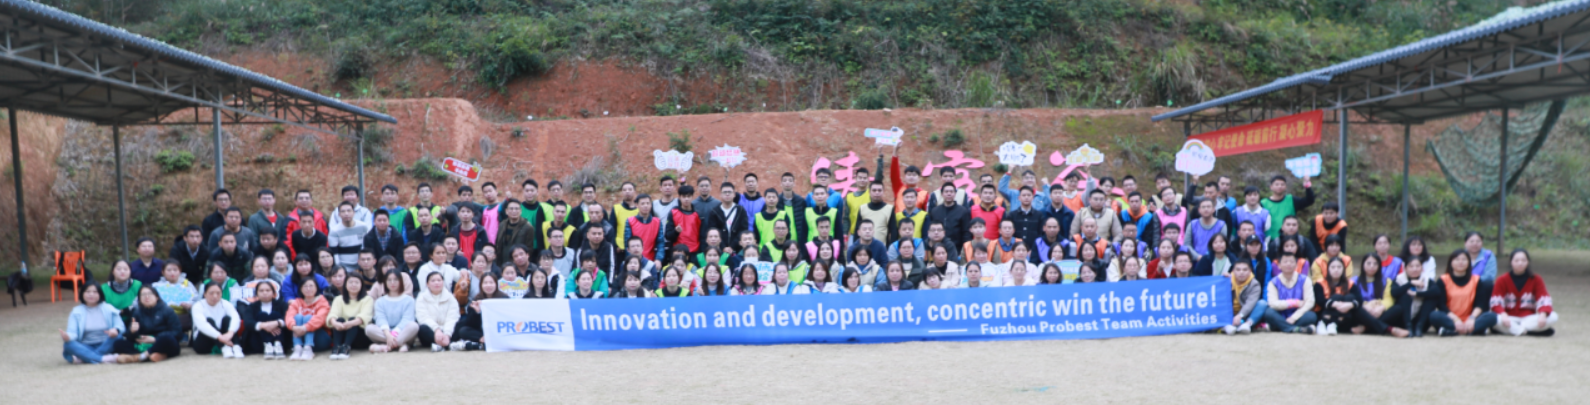 Trabalhe Juntos, Crie um Futuro Melhor!Atividade de formação de equipe Fuzhou Probest